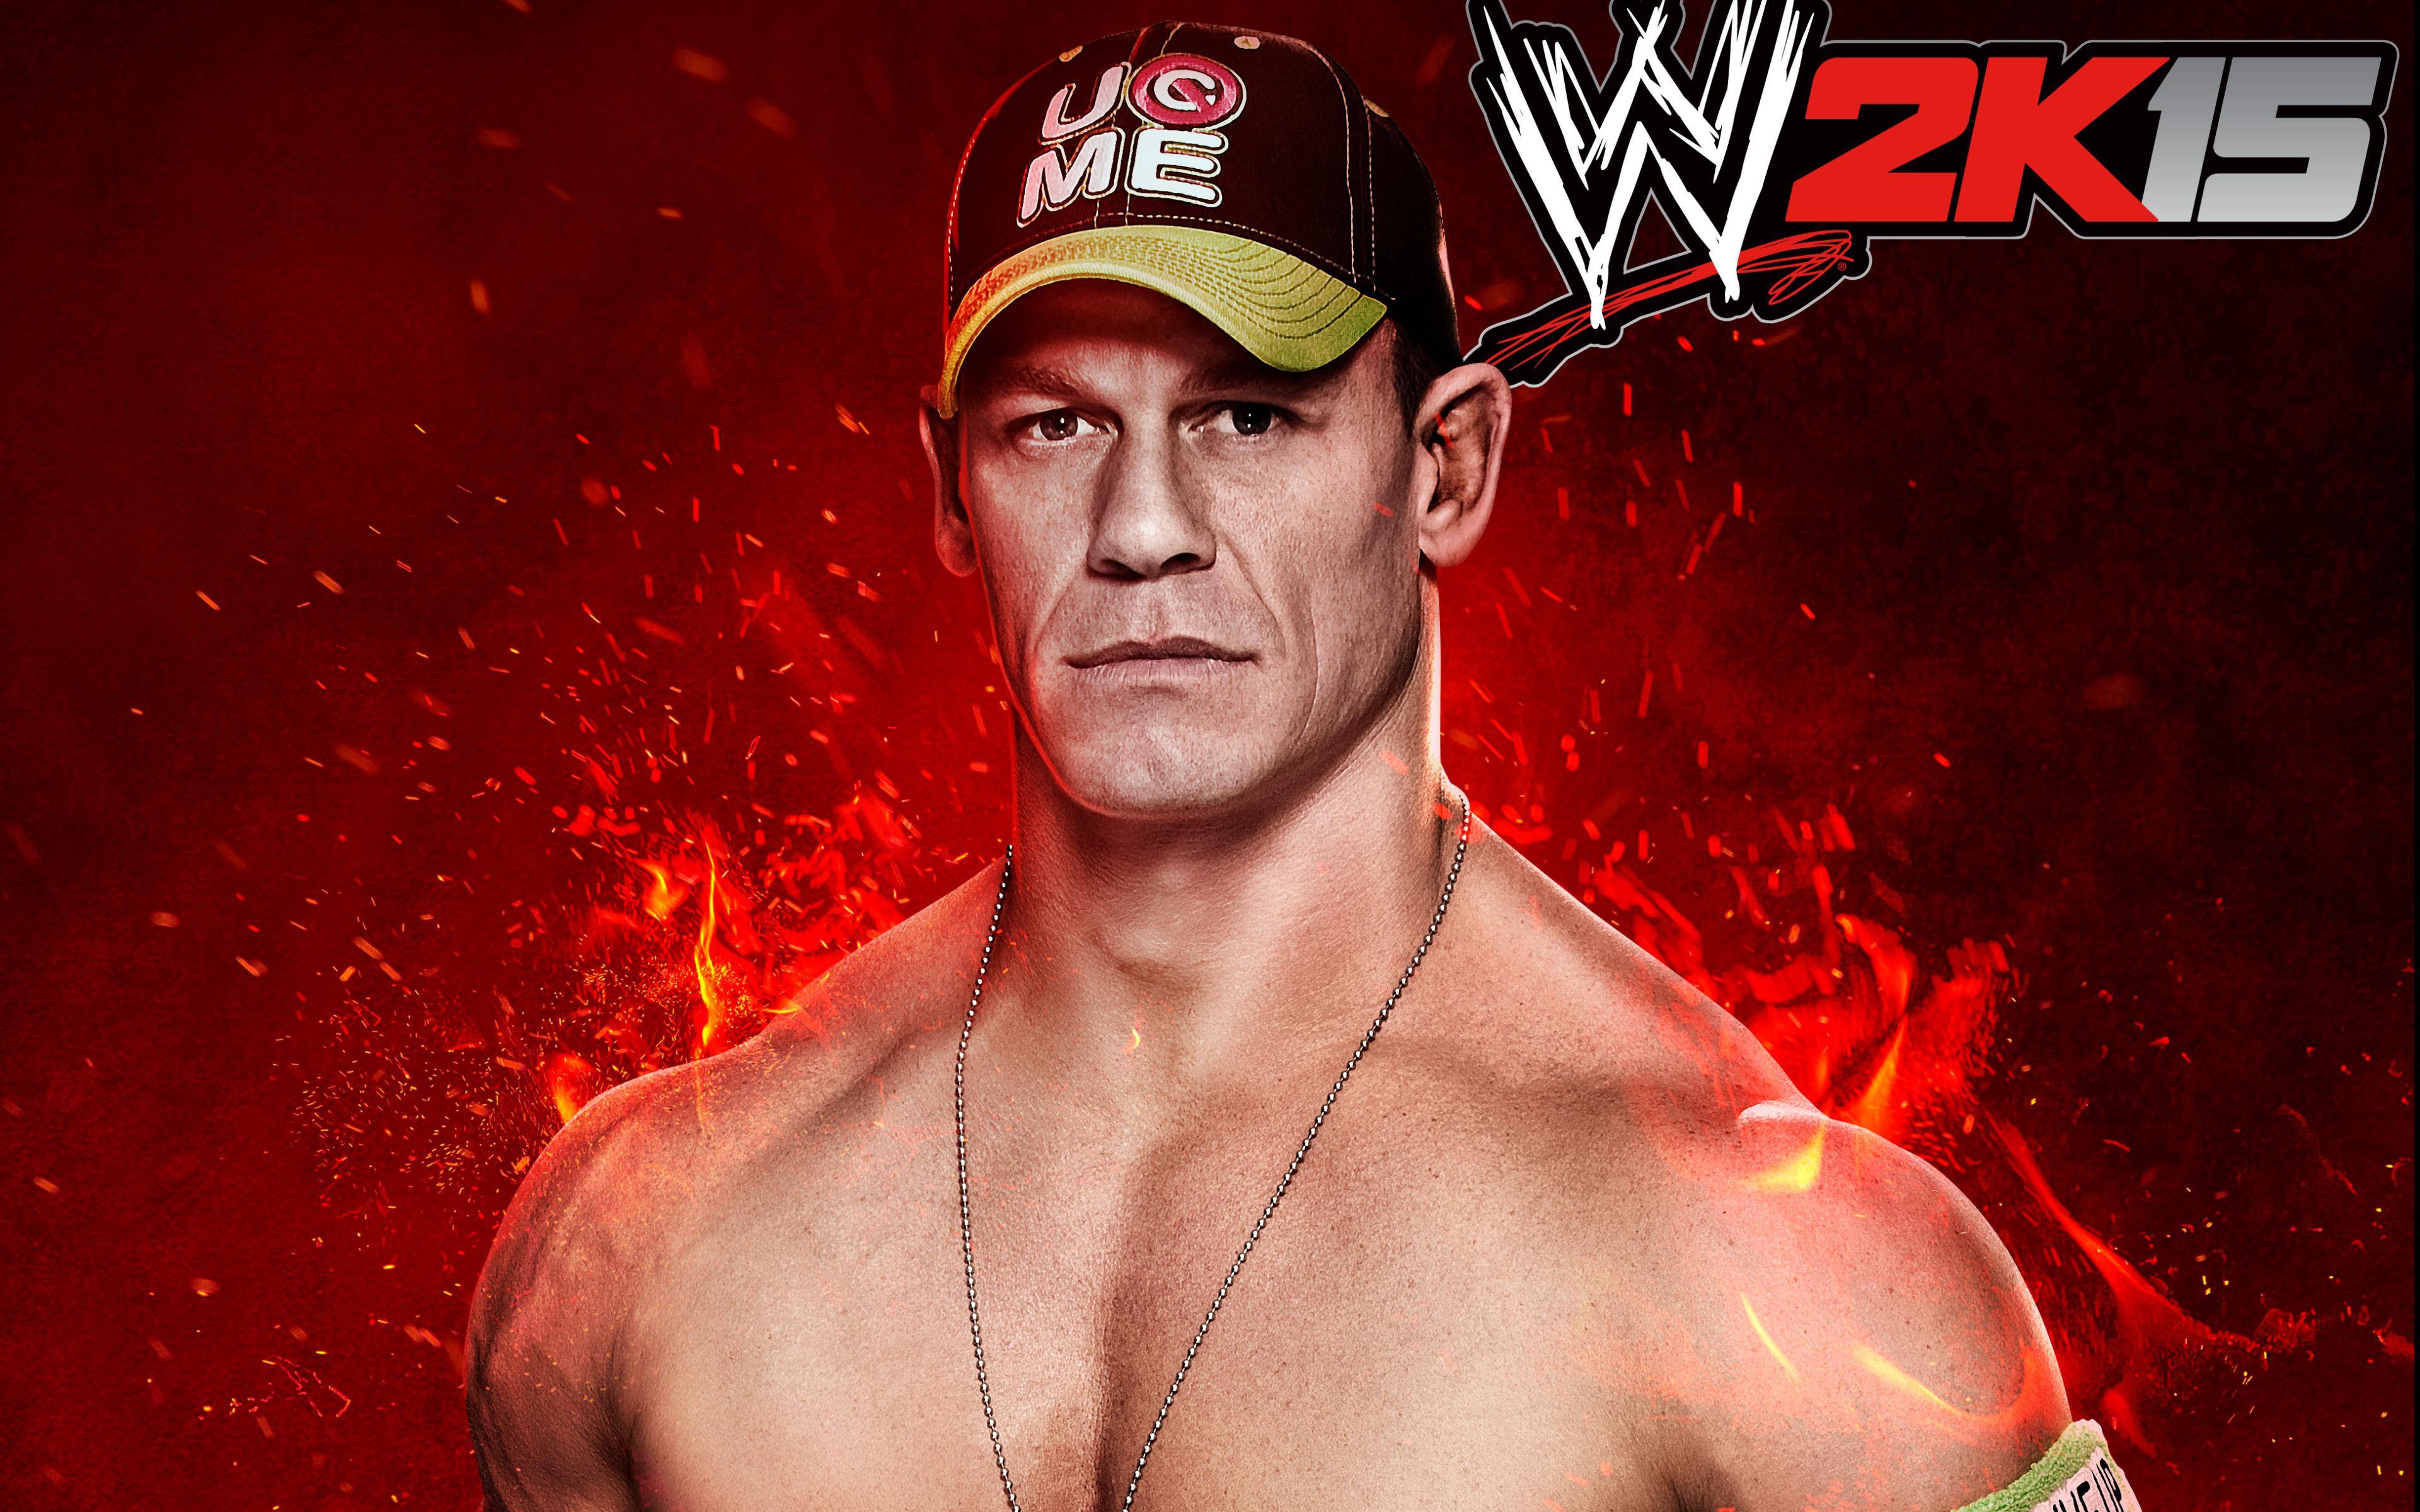 WWE John Cena Wallpapers 2015 HD. 99+ WWE 2K17 Wallpapers on